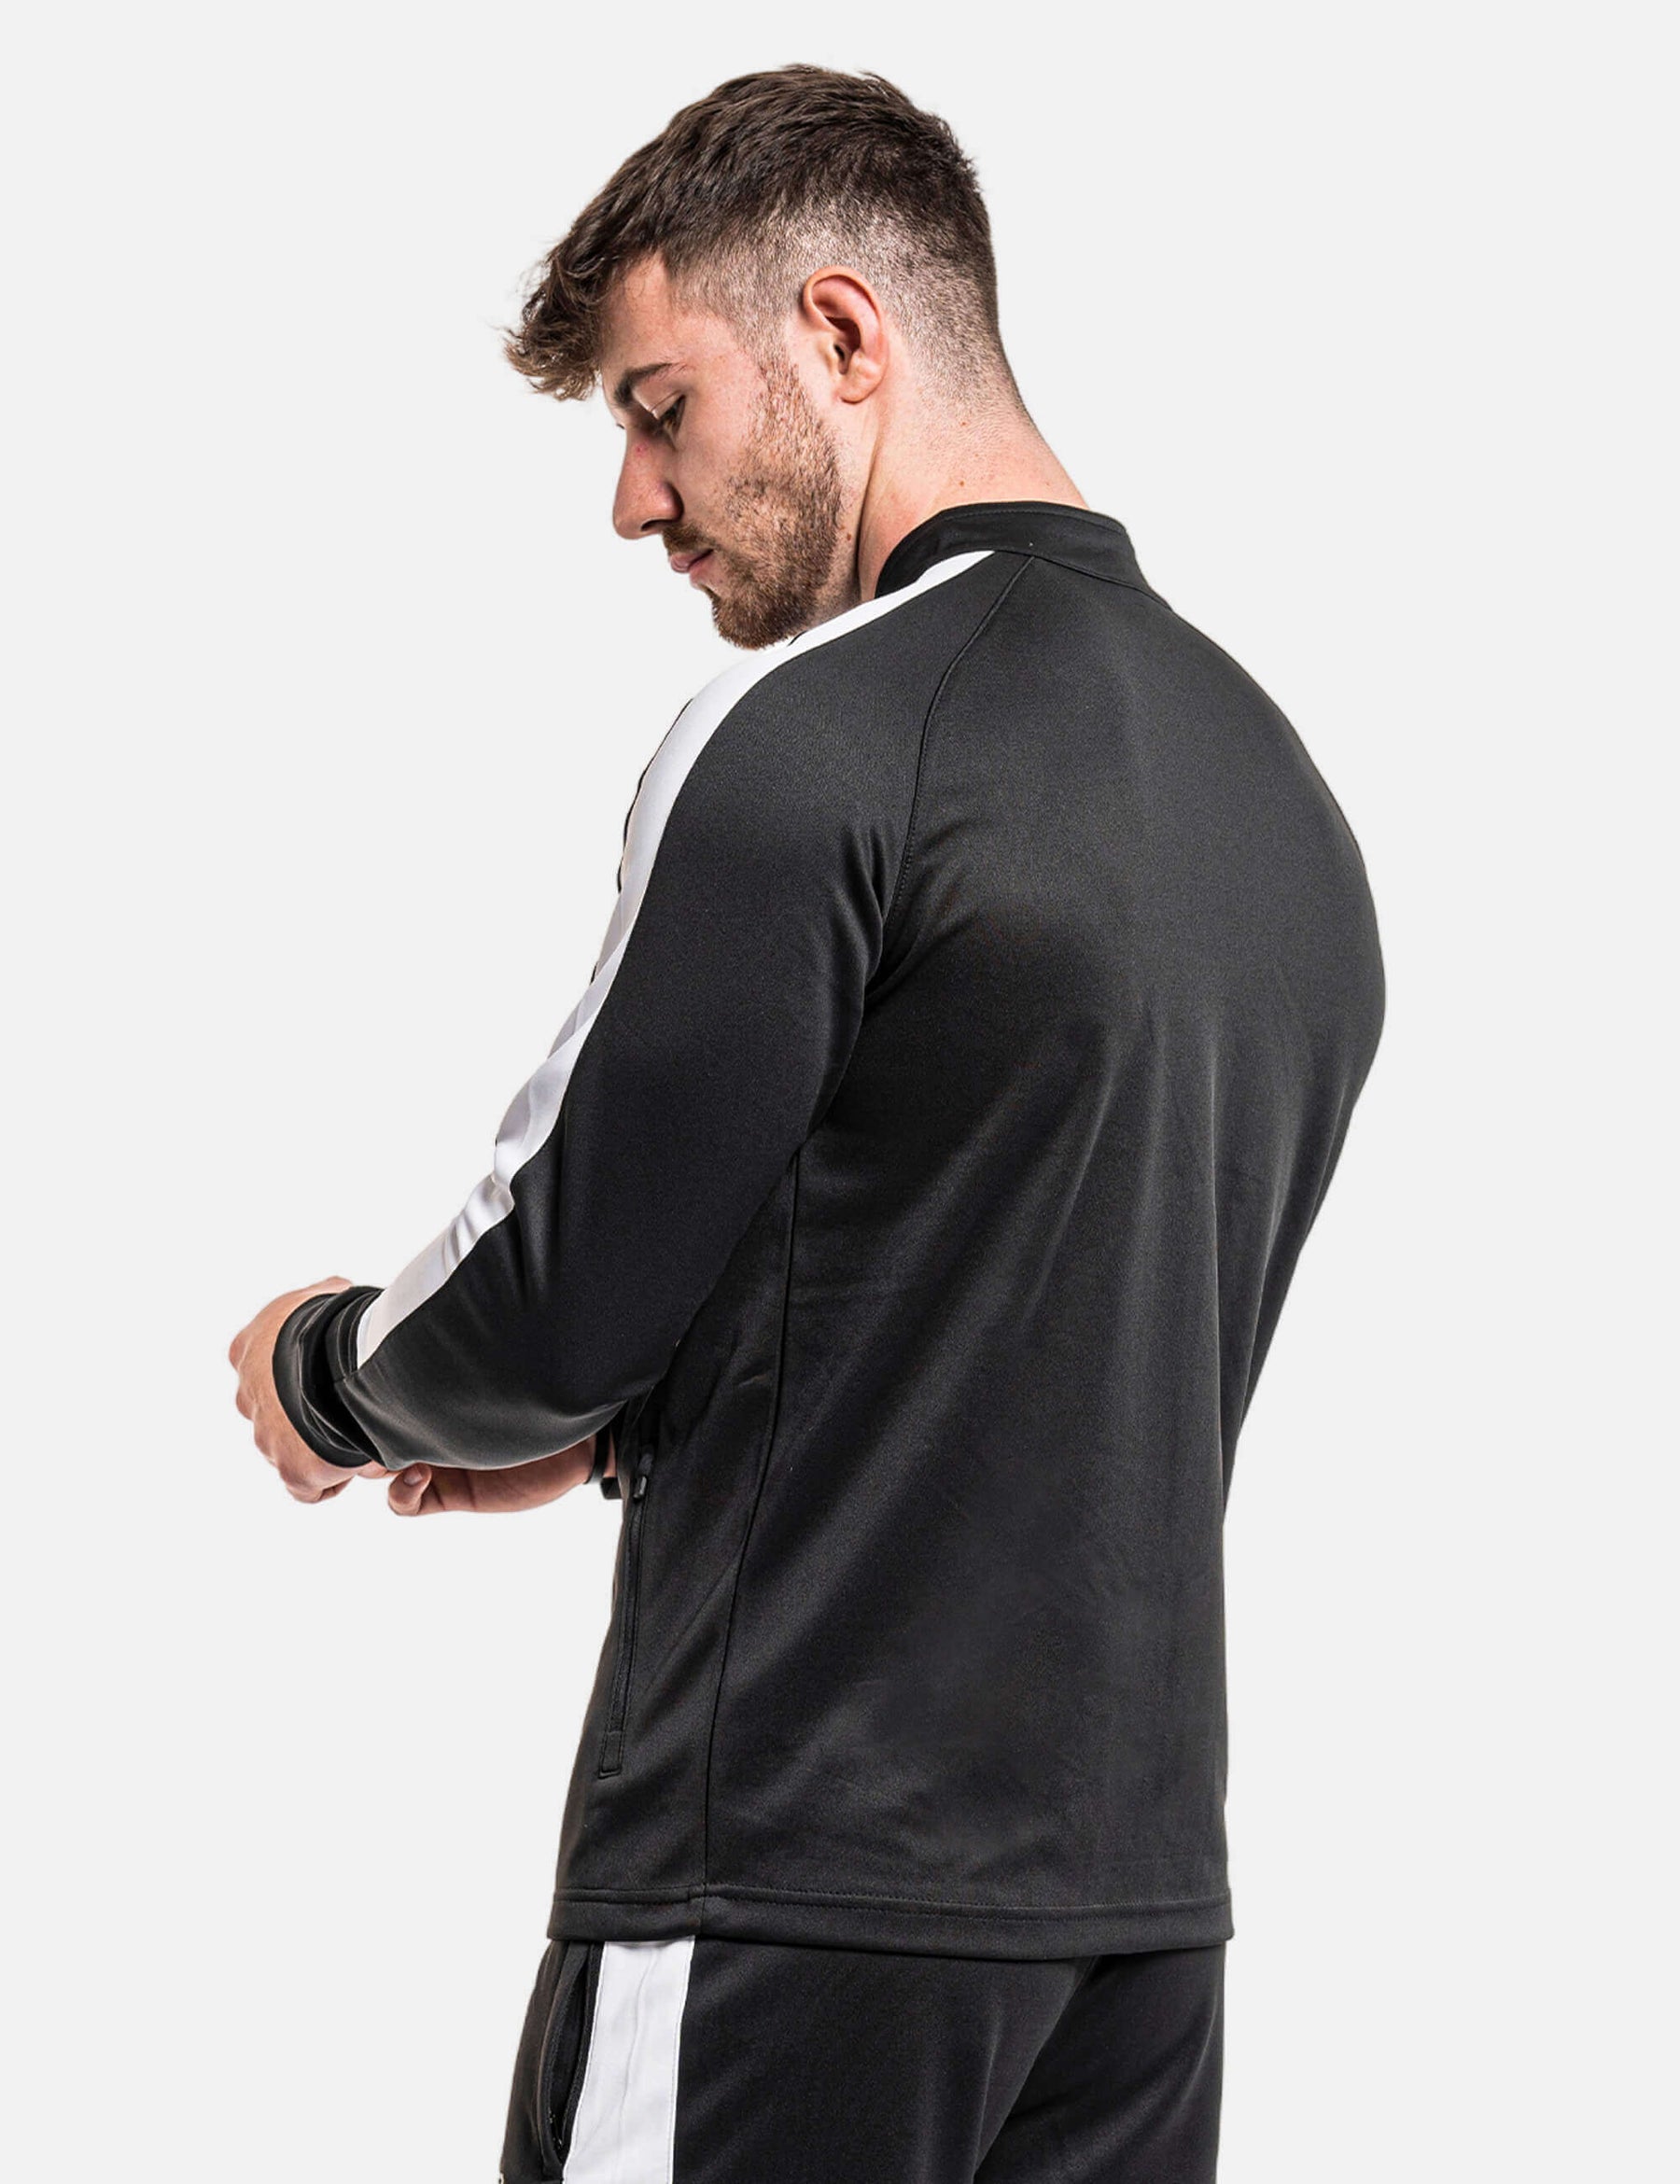 product photo of calisthenics jacket in black/white back side